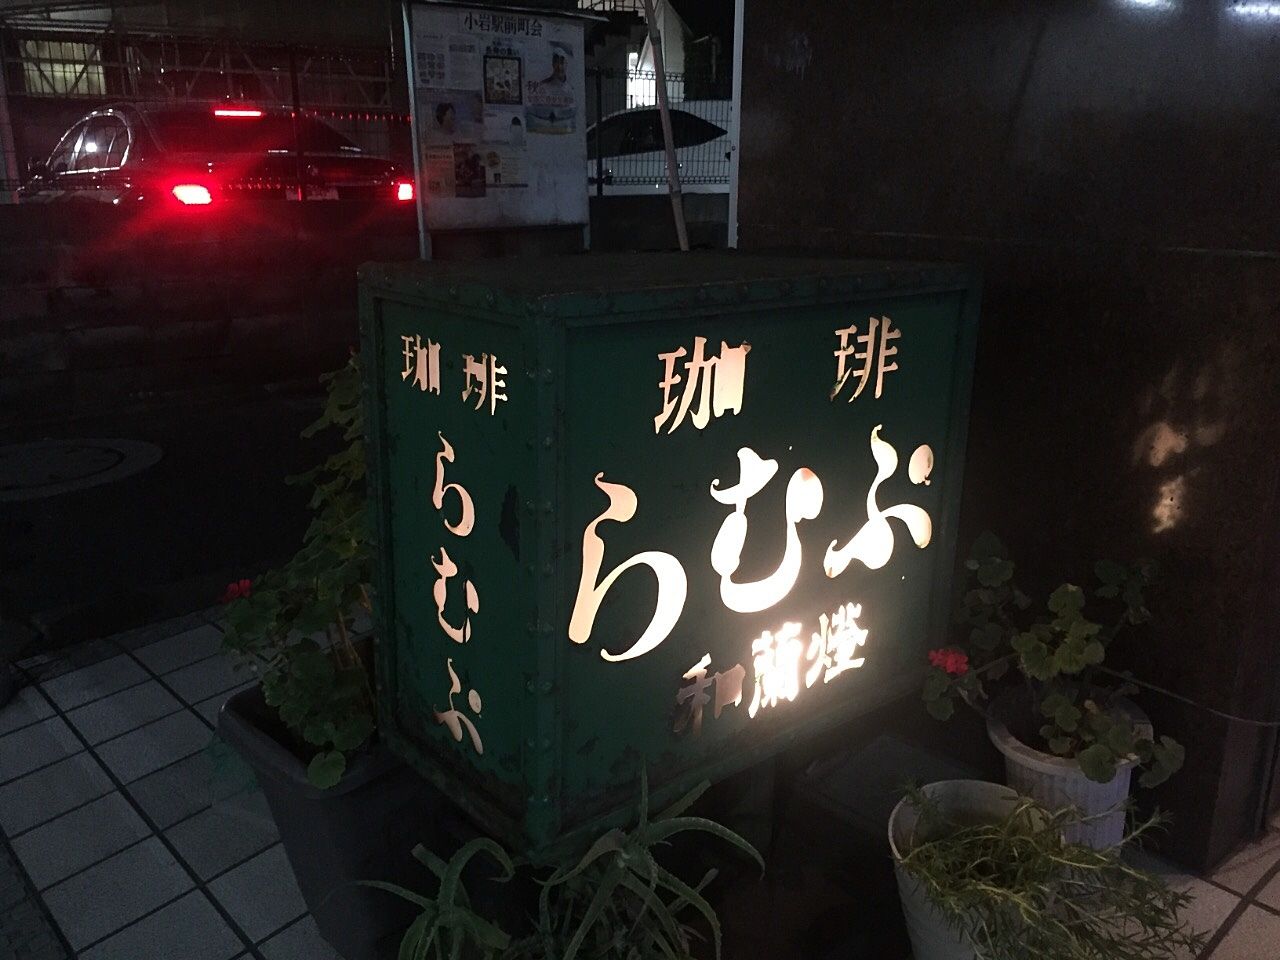 小岩の老舗喫茶店 らむぷ
10月閉店‼︎